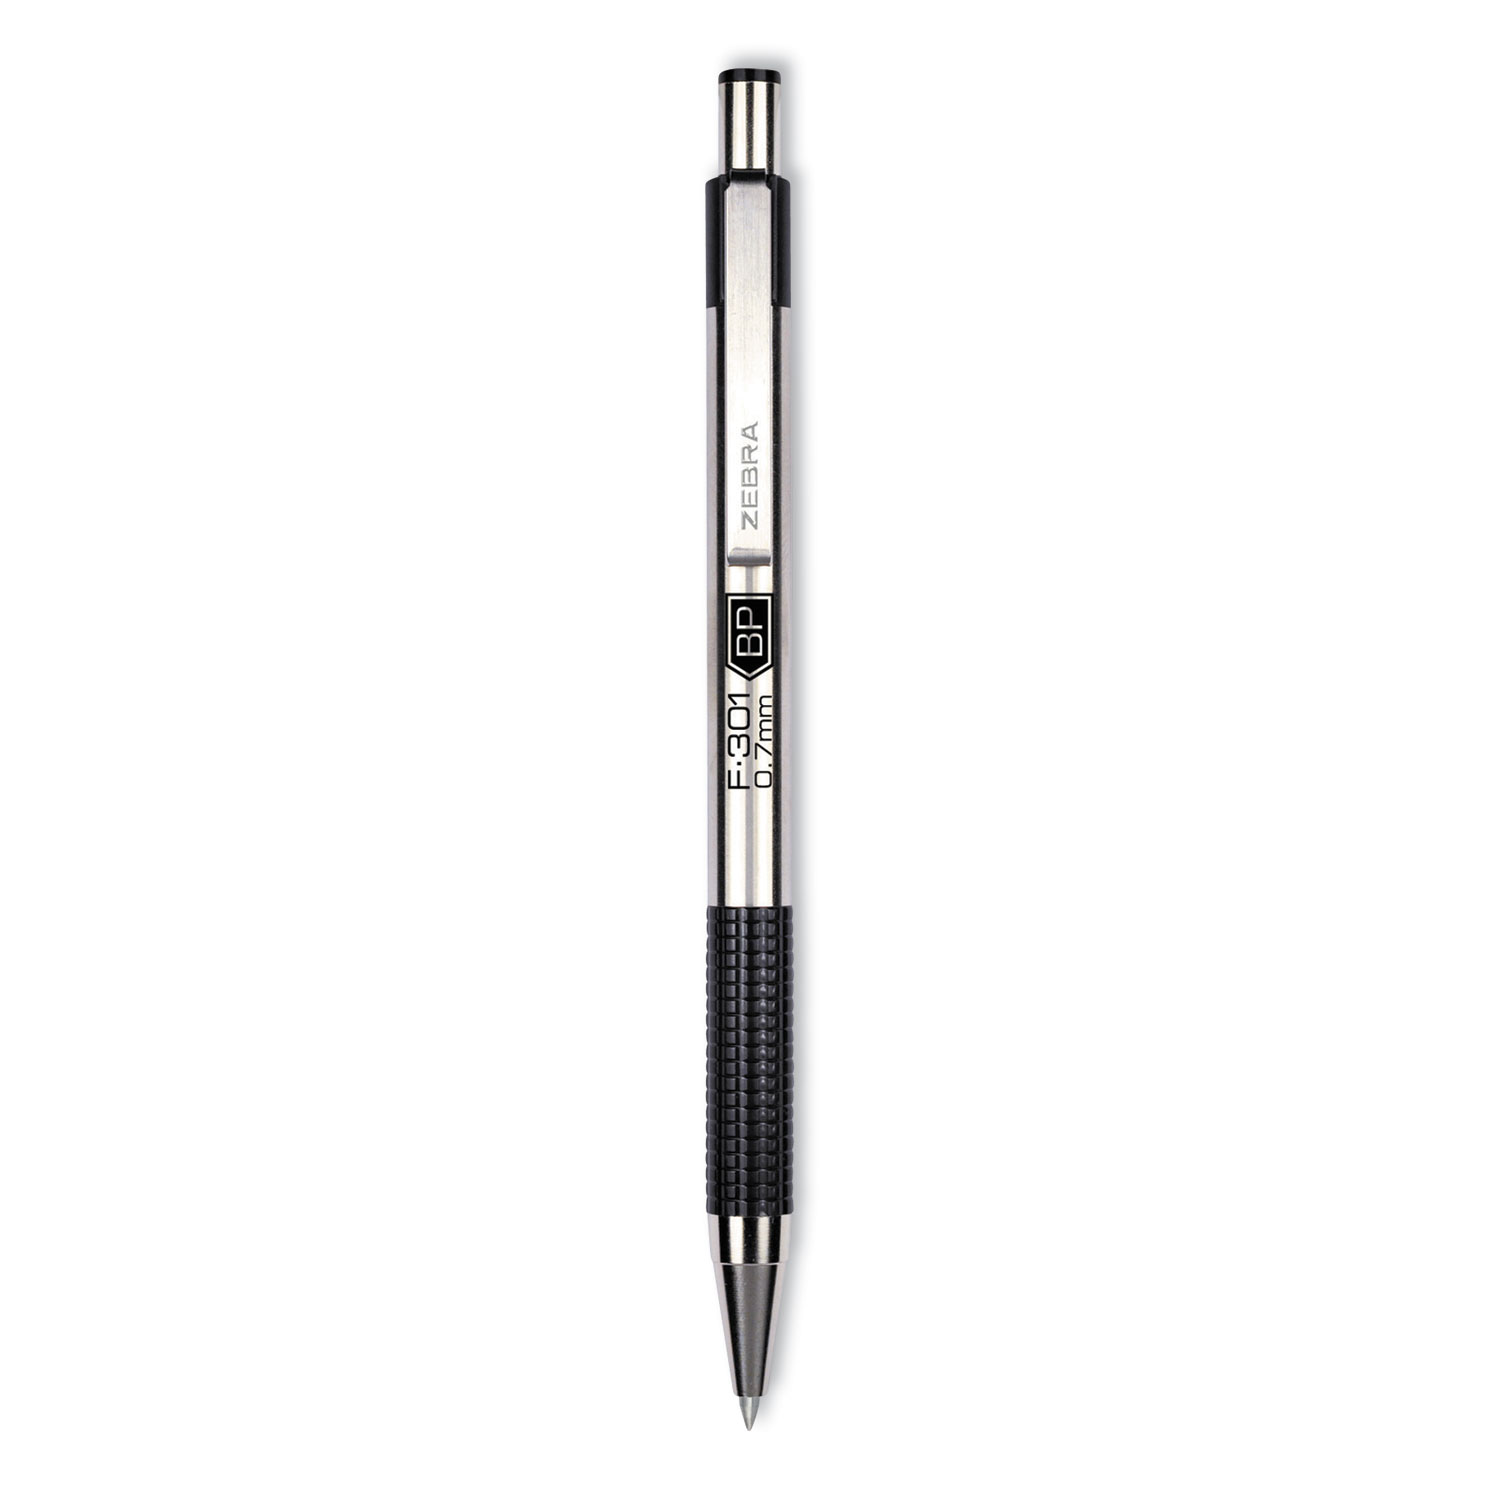 Stainless Zebra Pen F-301 Ballpoint Pen 1 Mm Pen Point Size Black Ink 